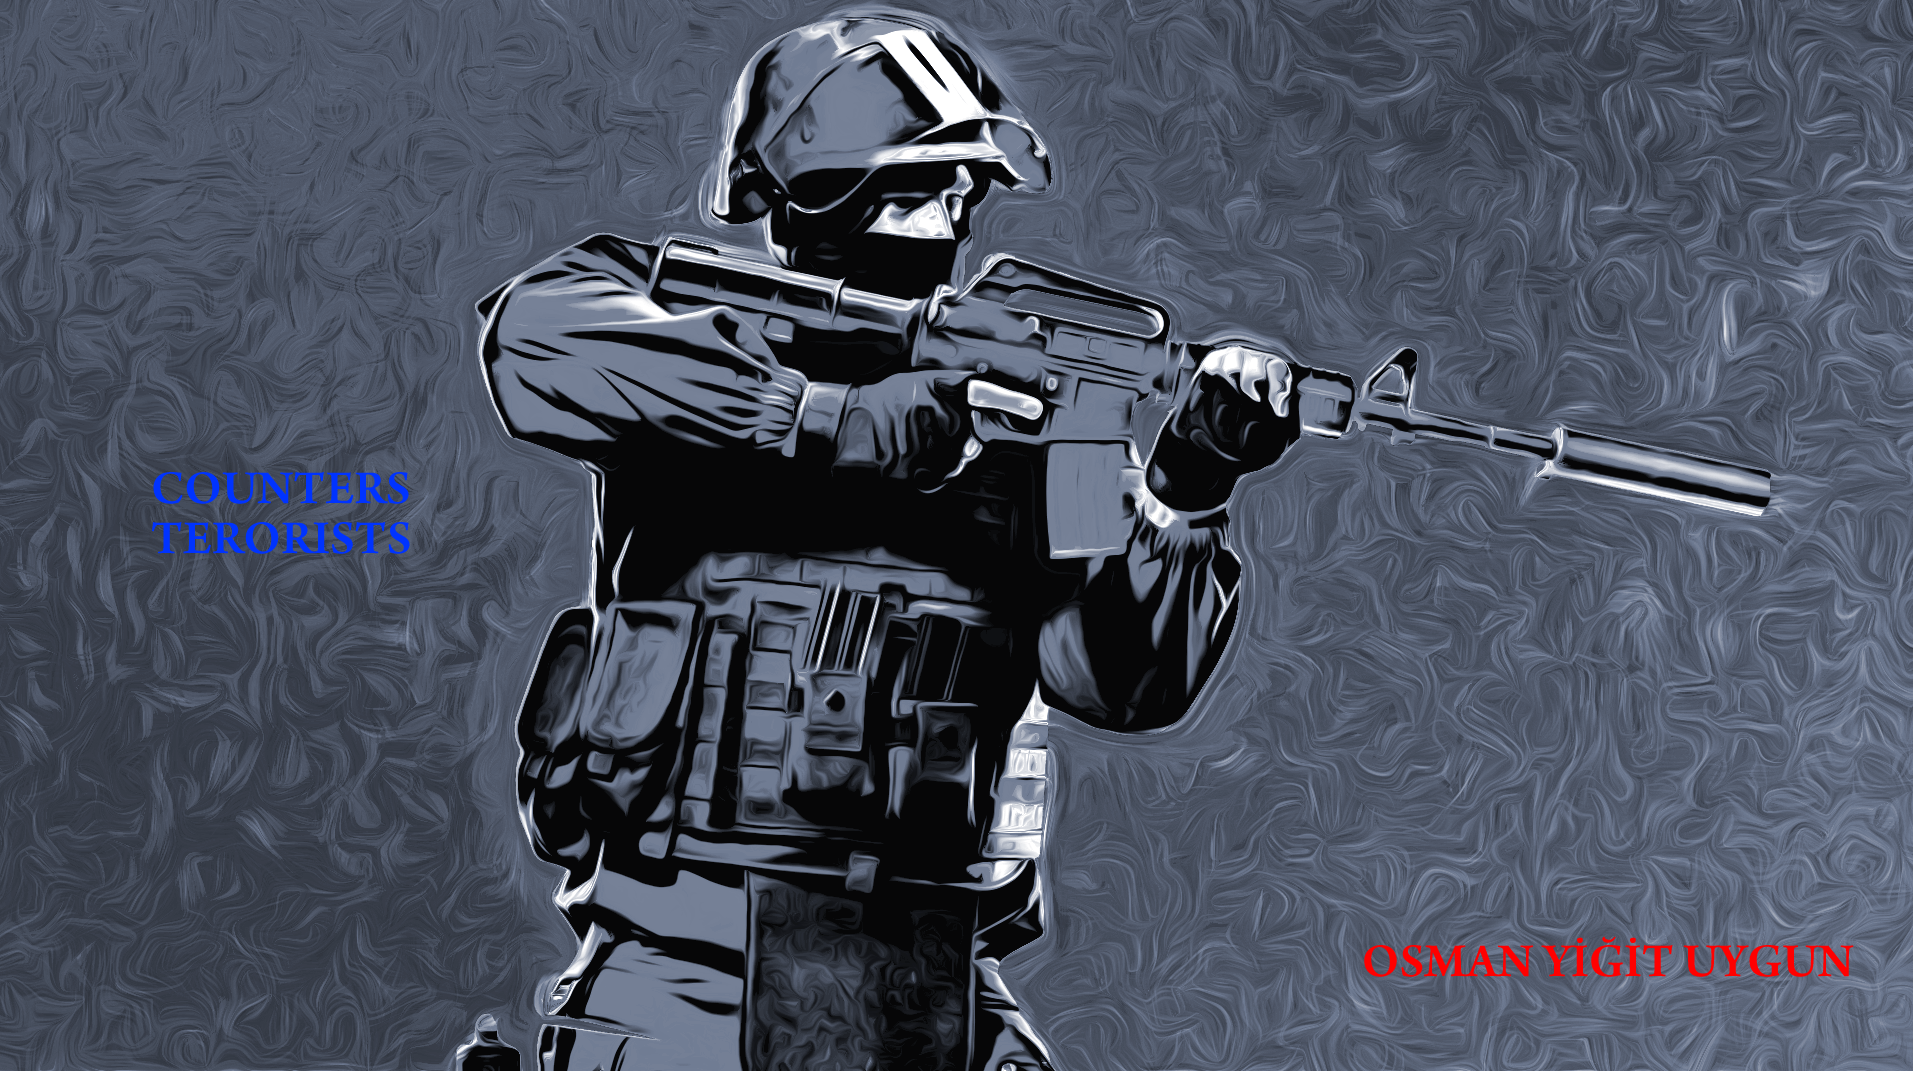 COUNTER TERORIST wallpaper